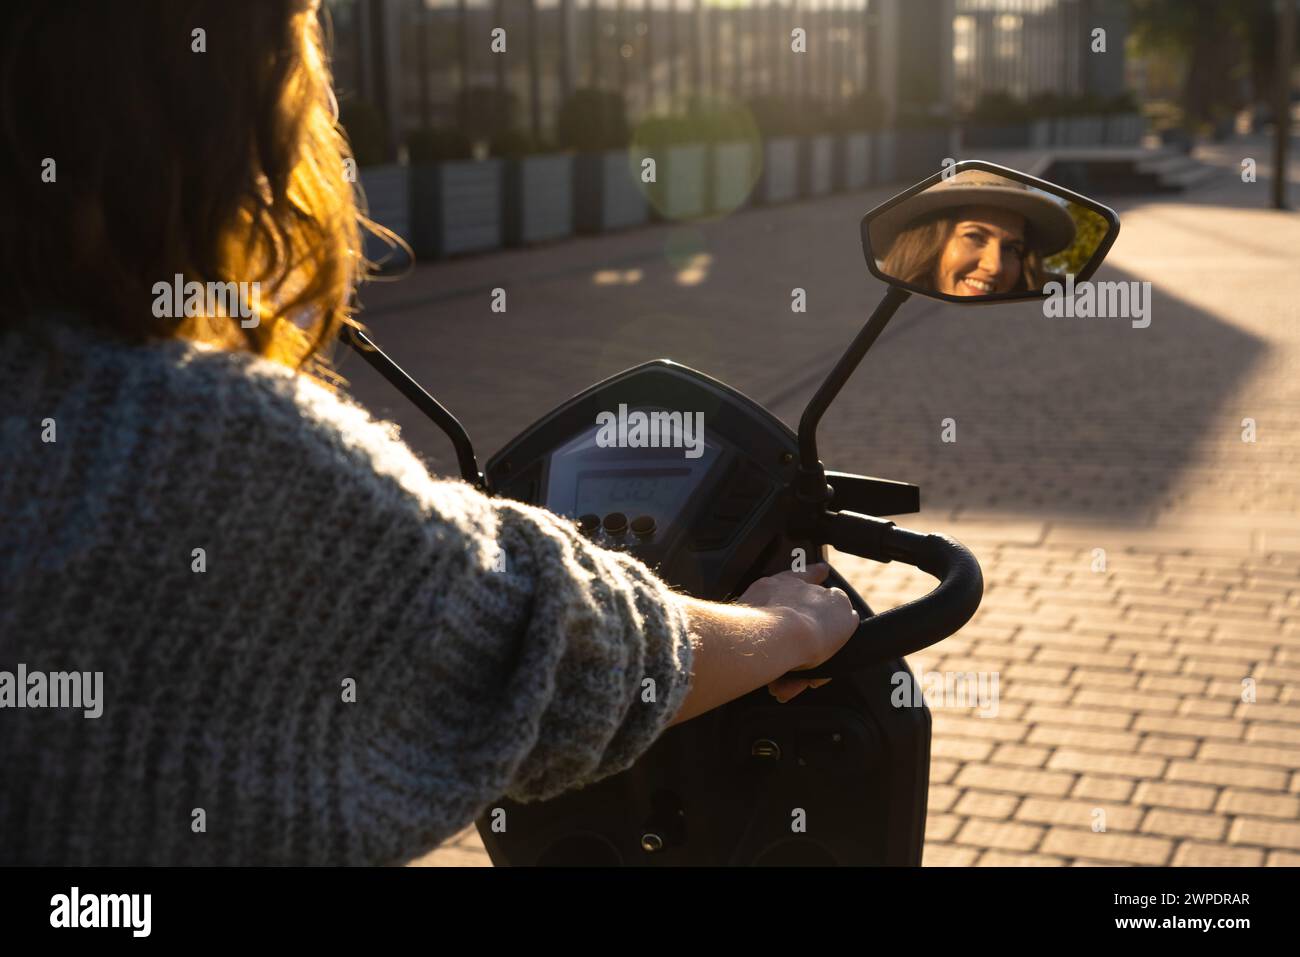 Frau Tourist auf einem Elektroroller mit vier Rädern auf einer Stadtstraße. Das Gesicht der Frau ist im Rückspiegel sichtbar. Stockfoto